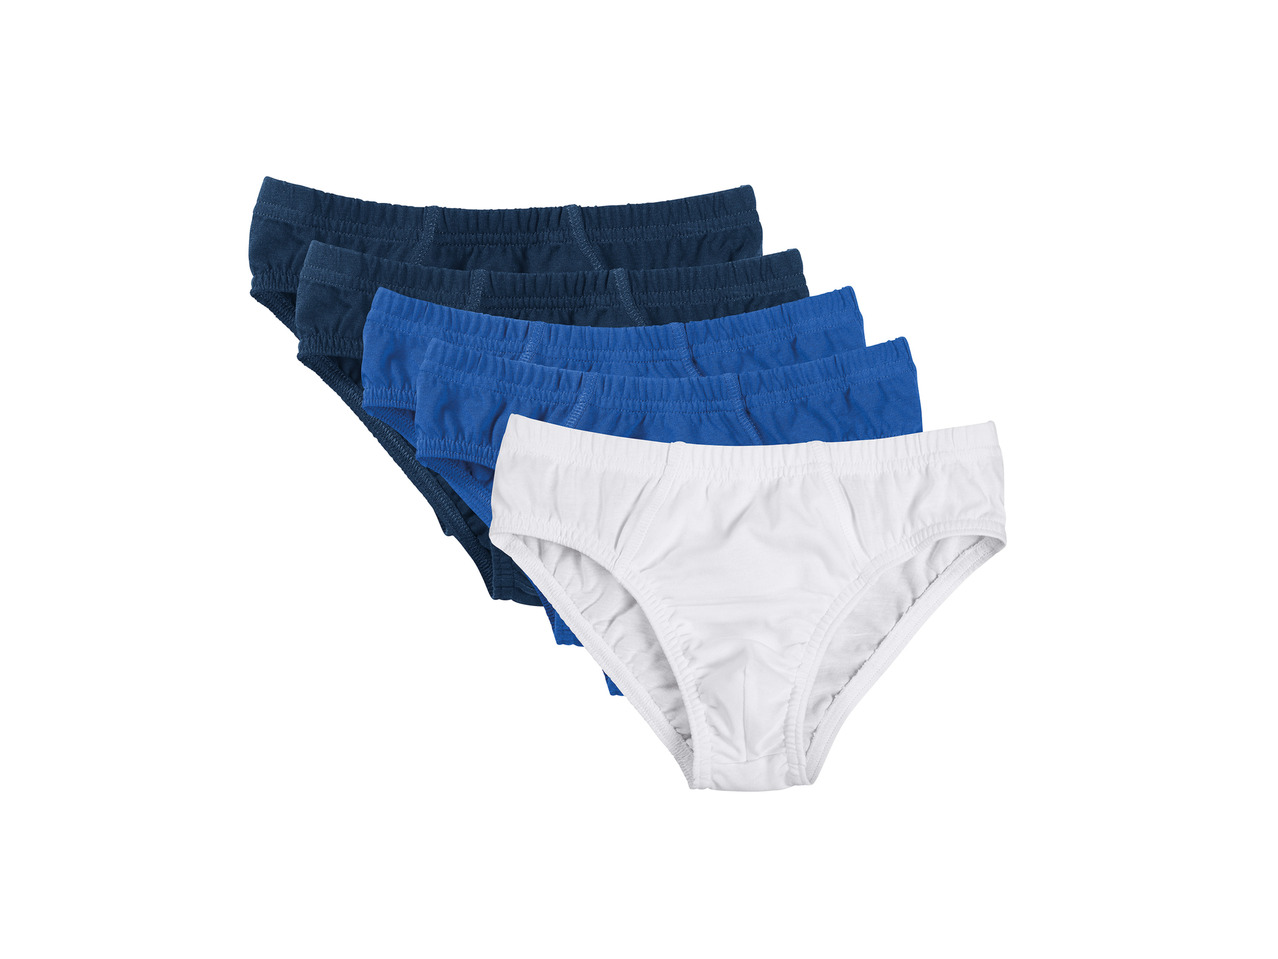 Smart Start Boys' Underwear1 - Lidl — Great Britain - Specials archive